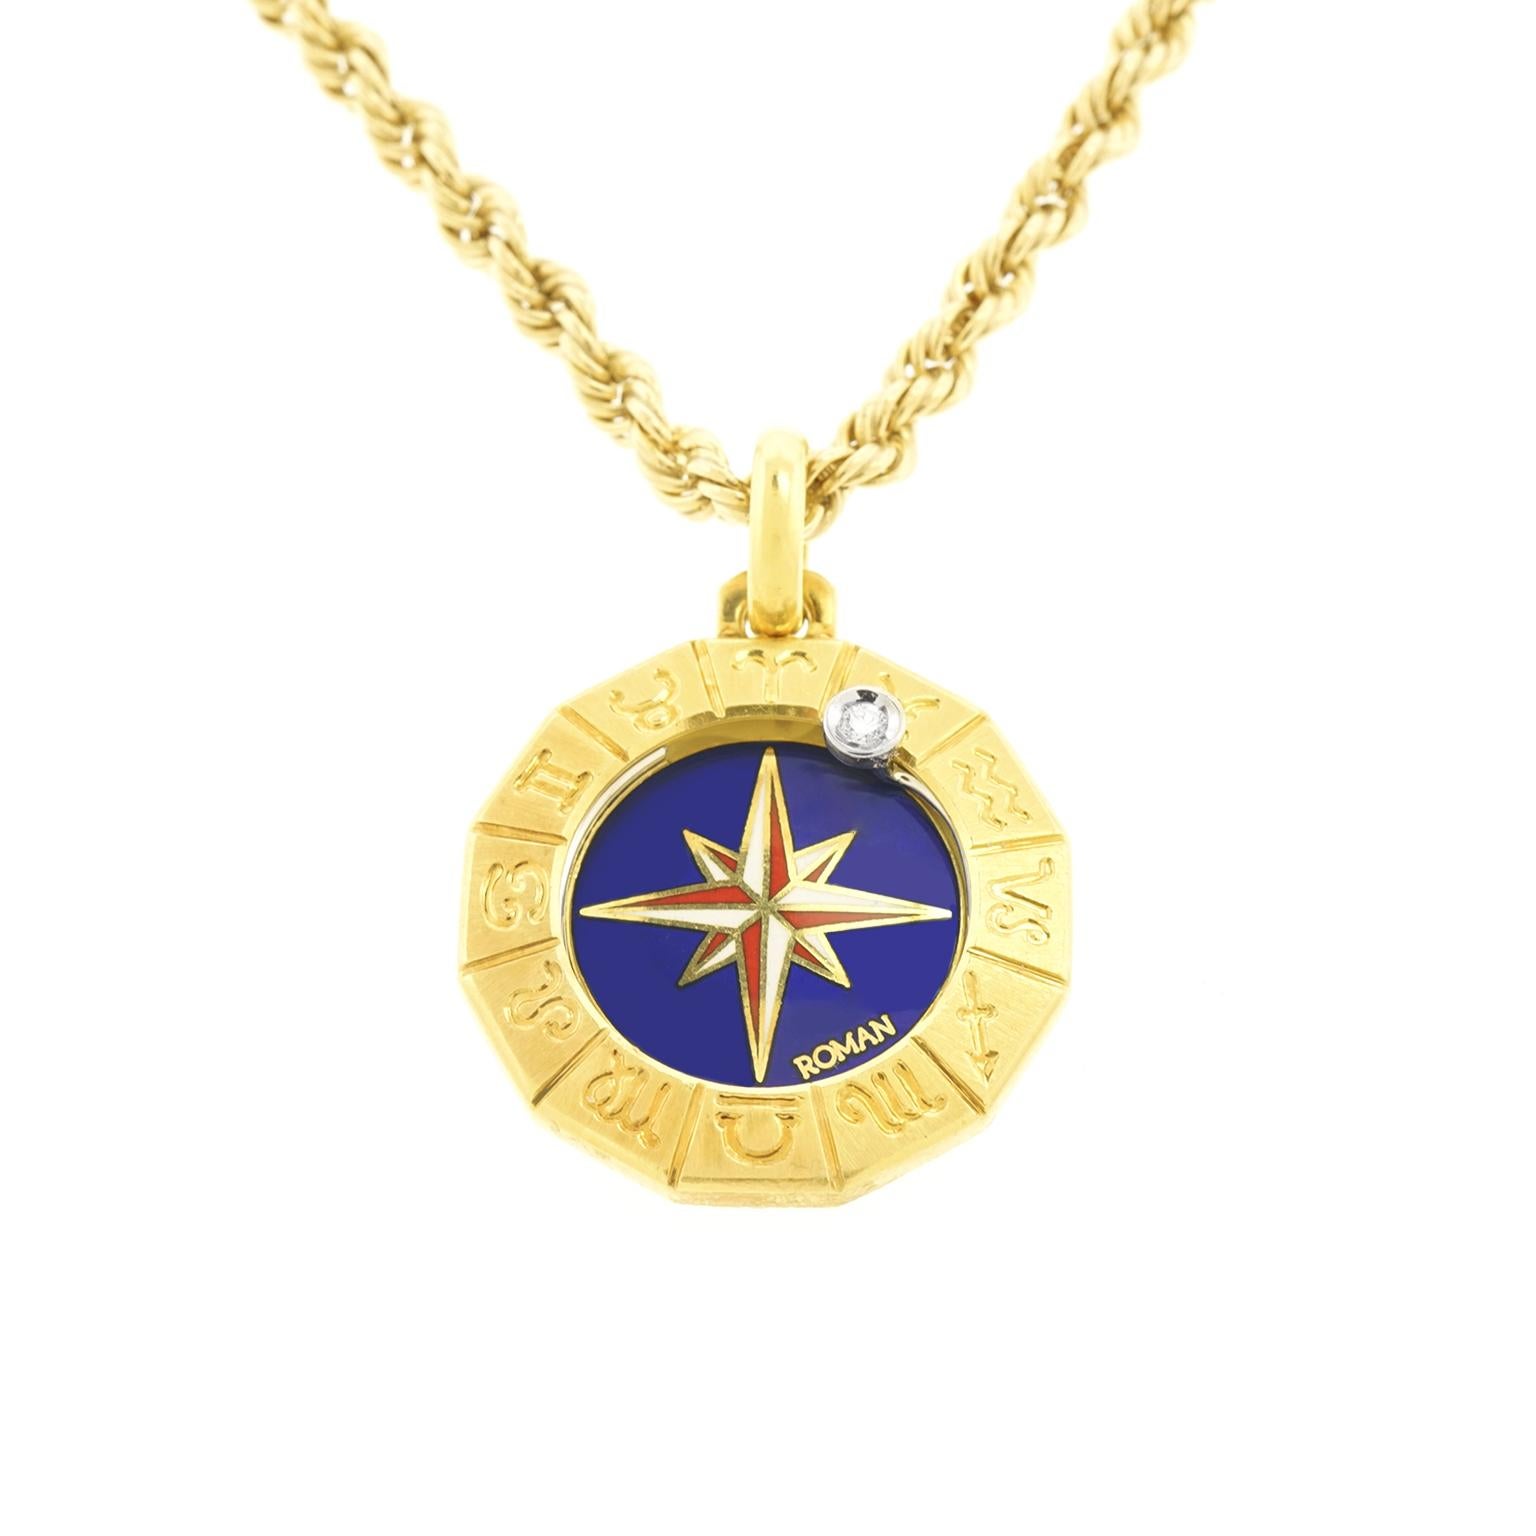  Zodiac Gold Pendant For Sale 5